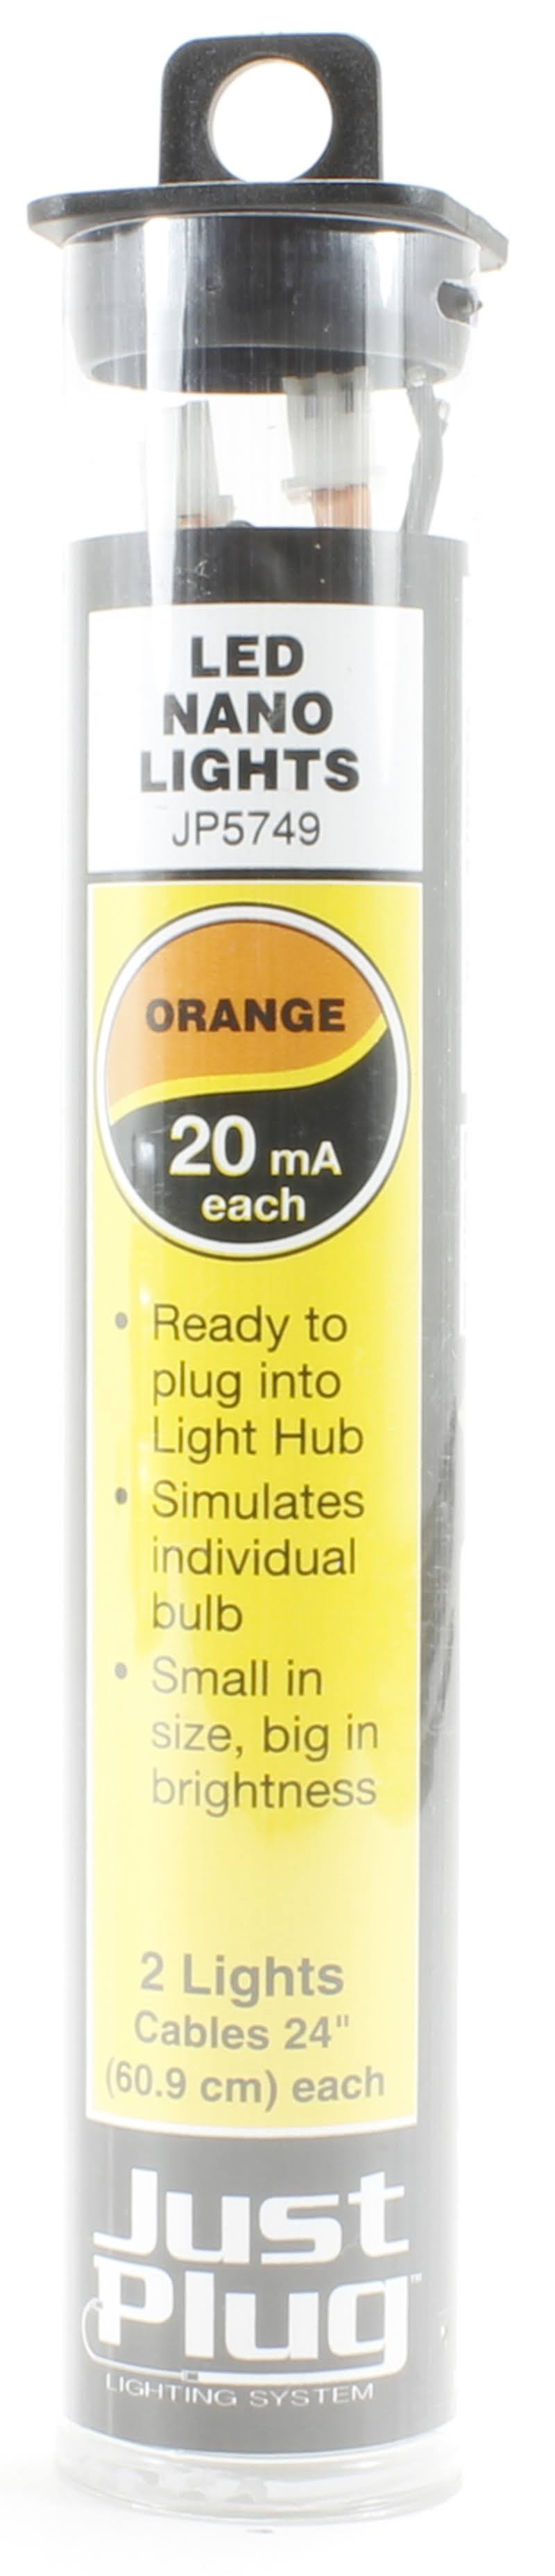 Woodland Scenics Jp5749 Just Plug Nano Led Lights - Orange